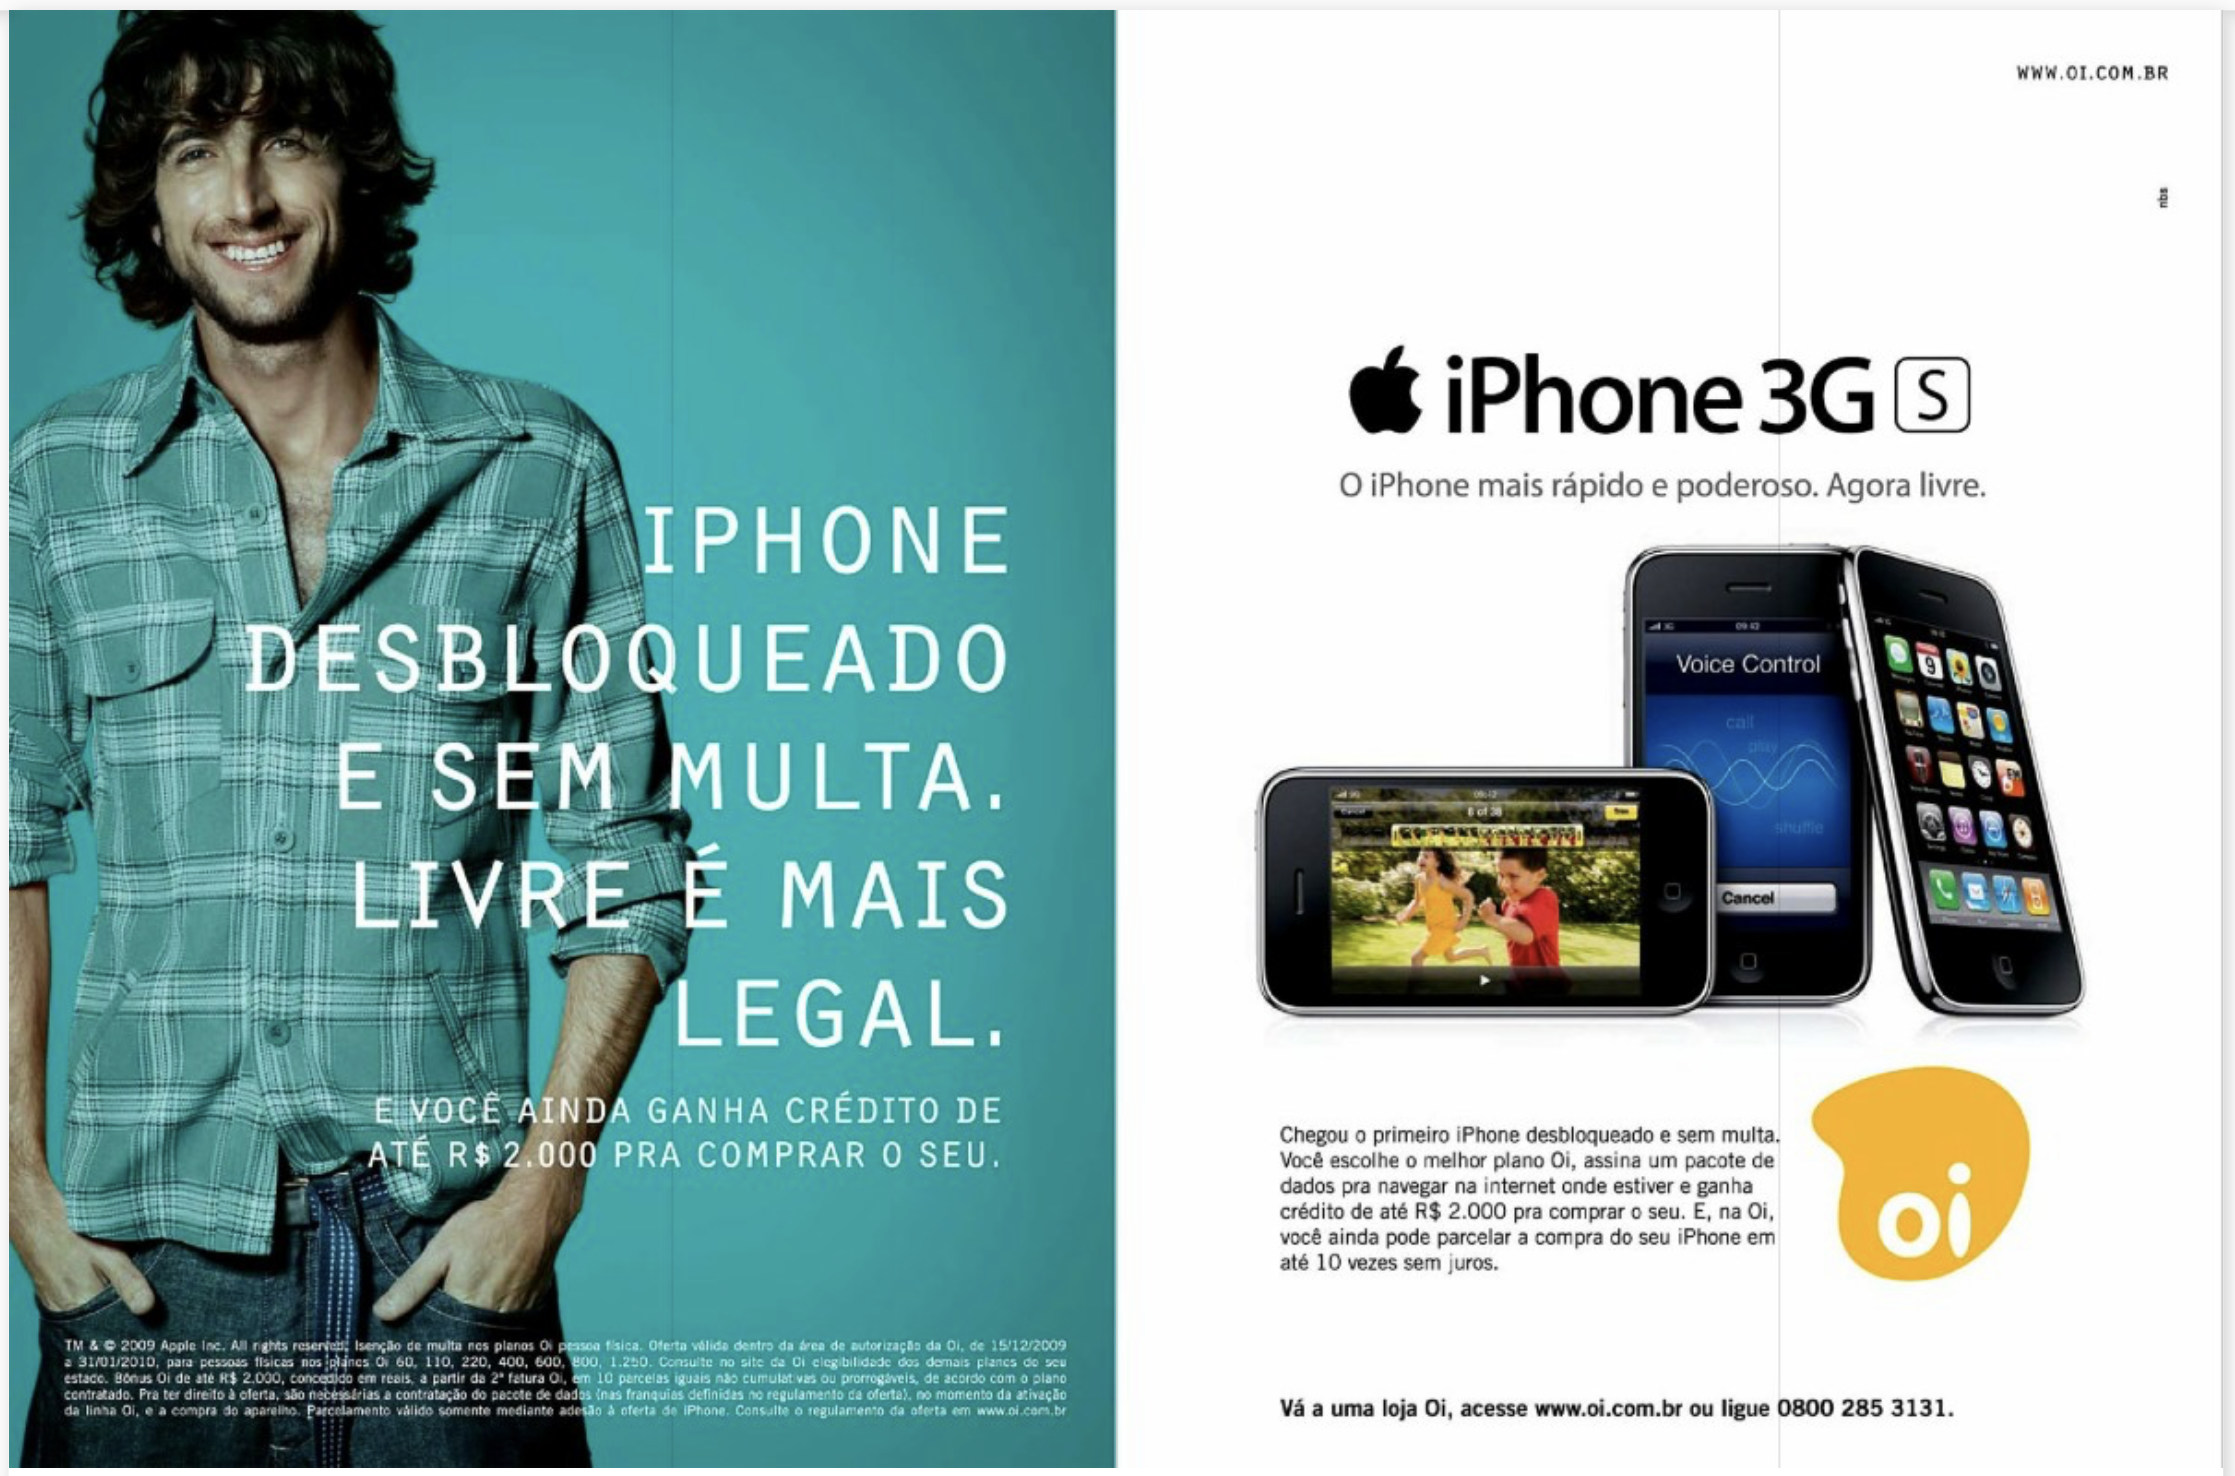 Anúncio da operadora de telefonia OI apresentando em 2010 a oferta do iPhone 3Gs em sua versão desbloqueada